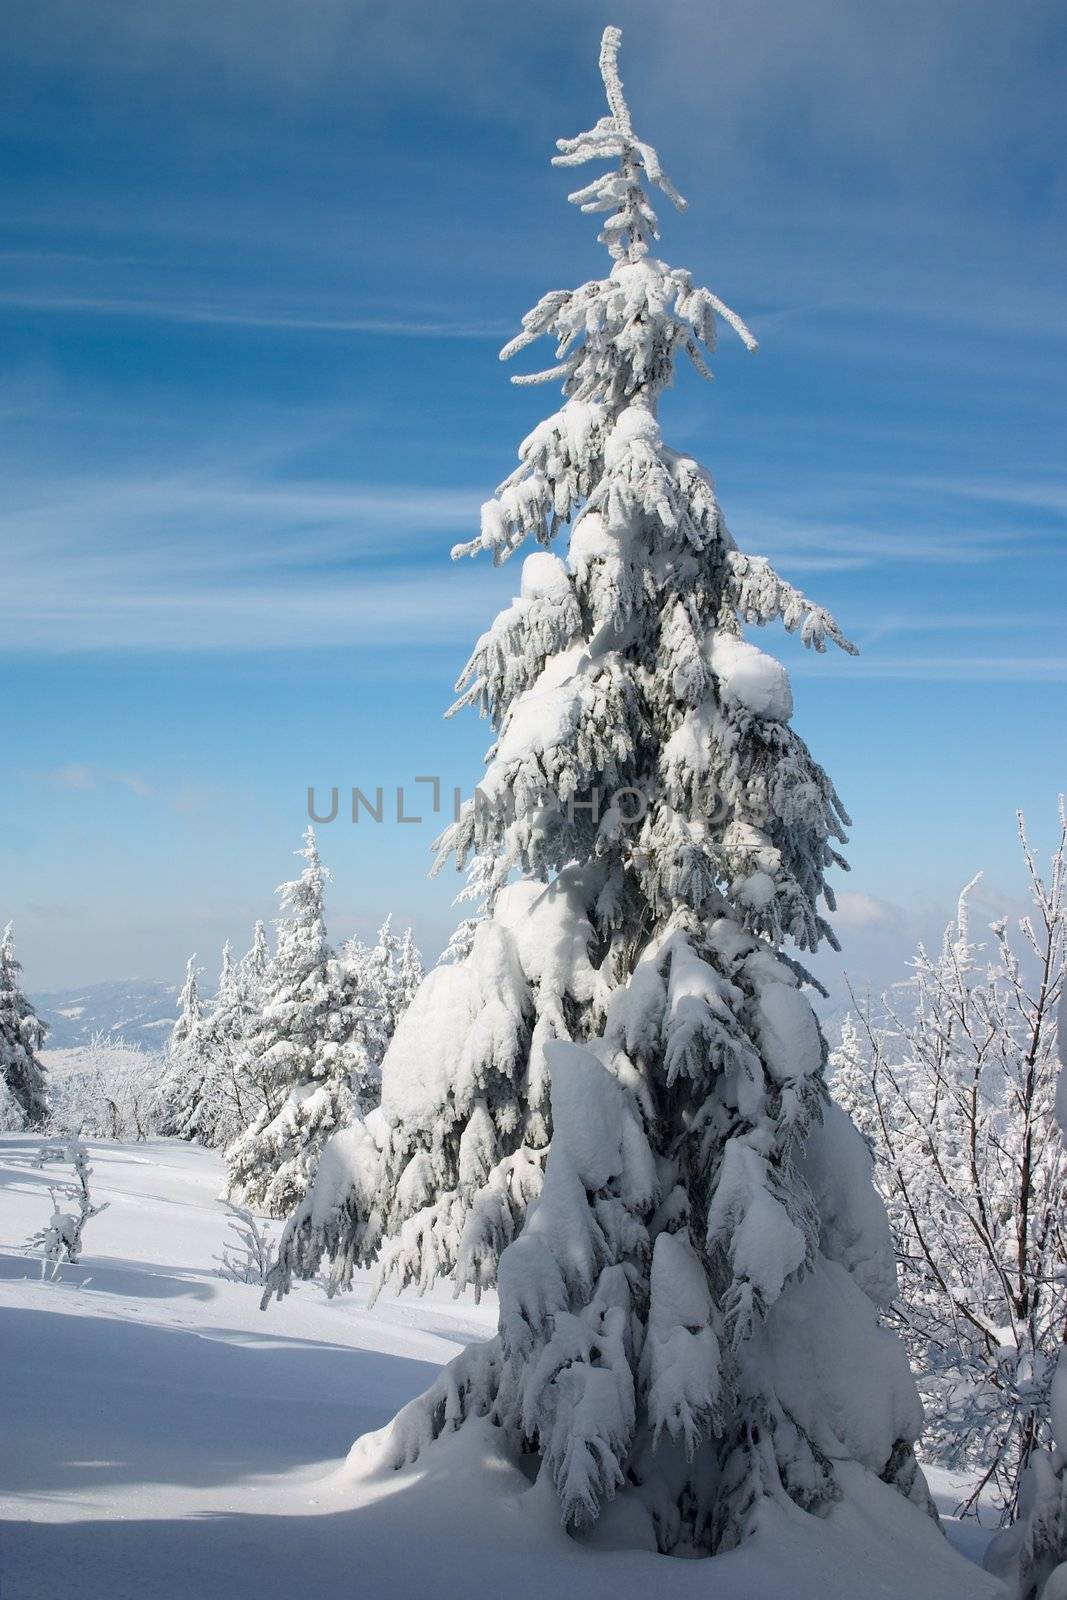 snowy fir tree in winter mountains by Ukrainian